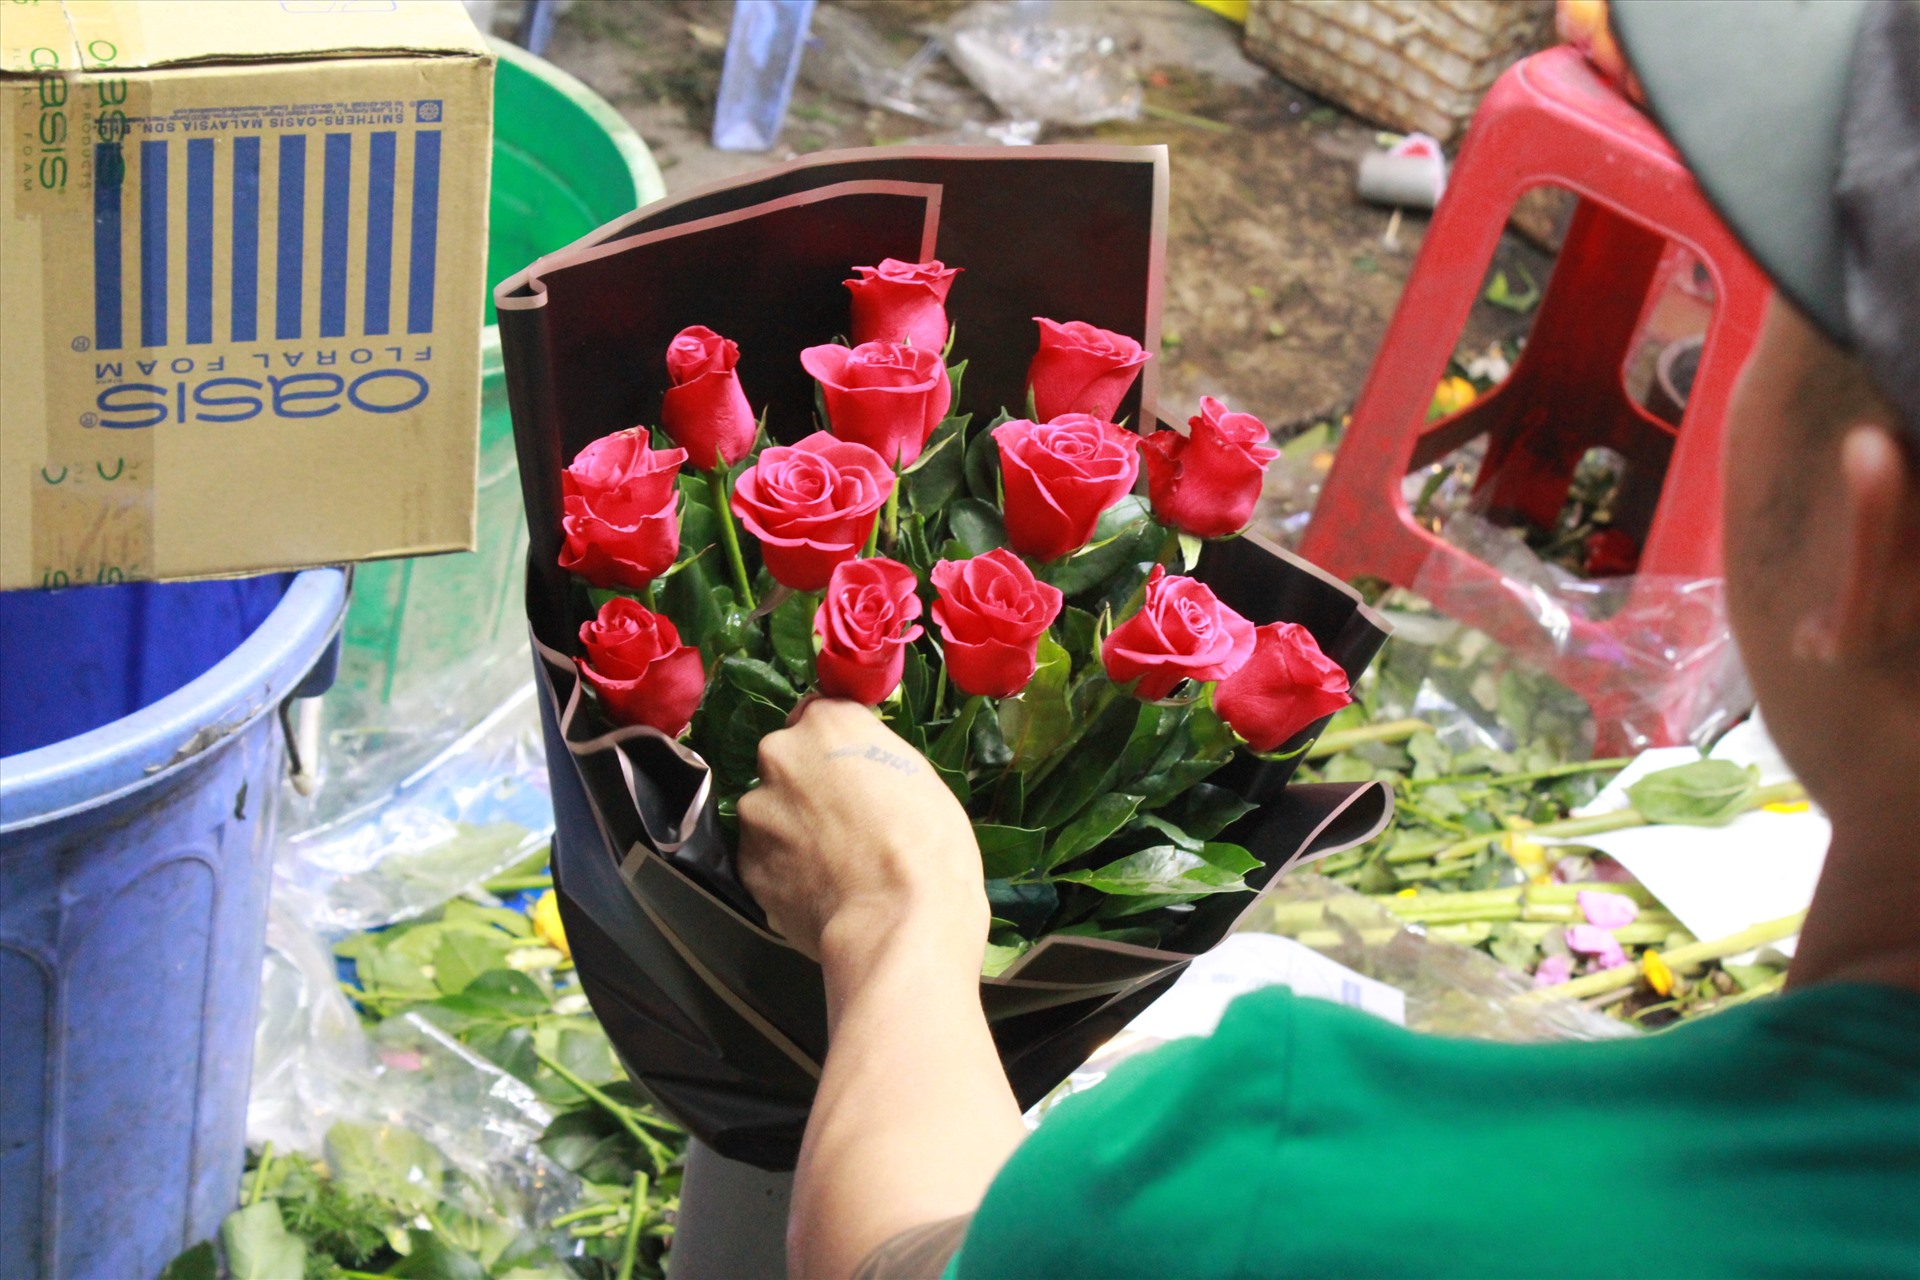 Để sản xuất một bó hoa “Siêu to khổng lồ” trung bình sẽ mất khoảng 40 đến 60 phút.